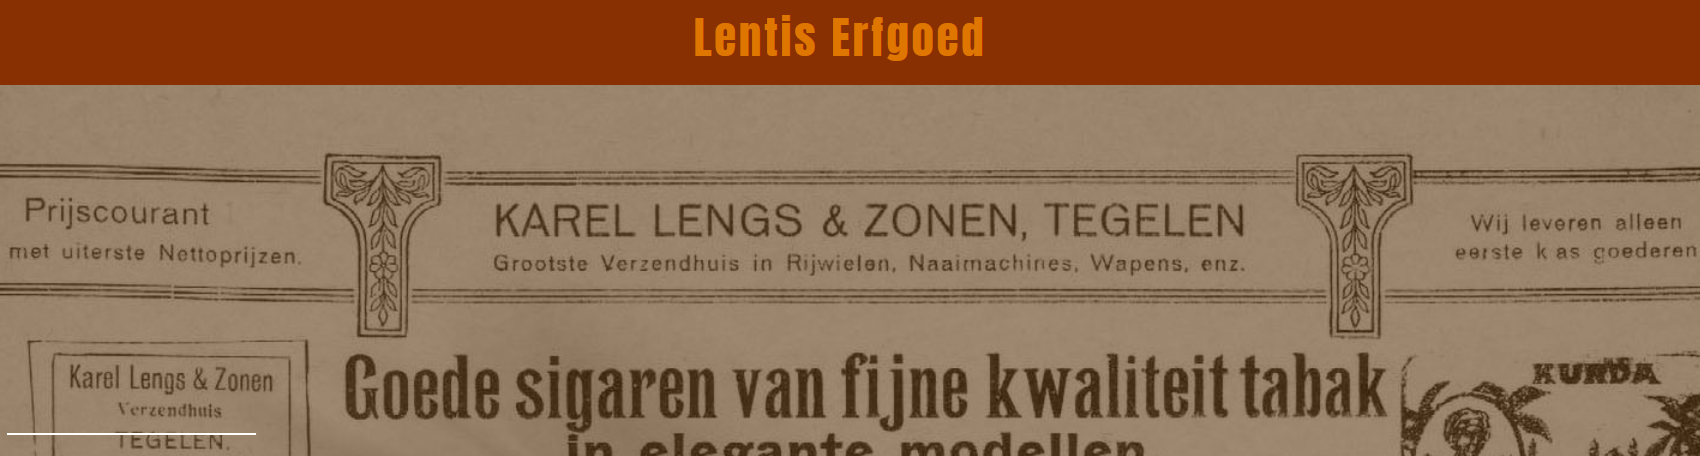 2019-1 - Fragment Lentis Magazine.3